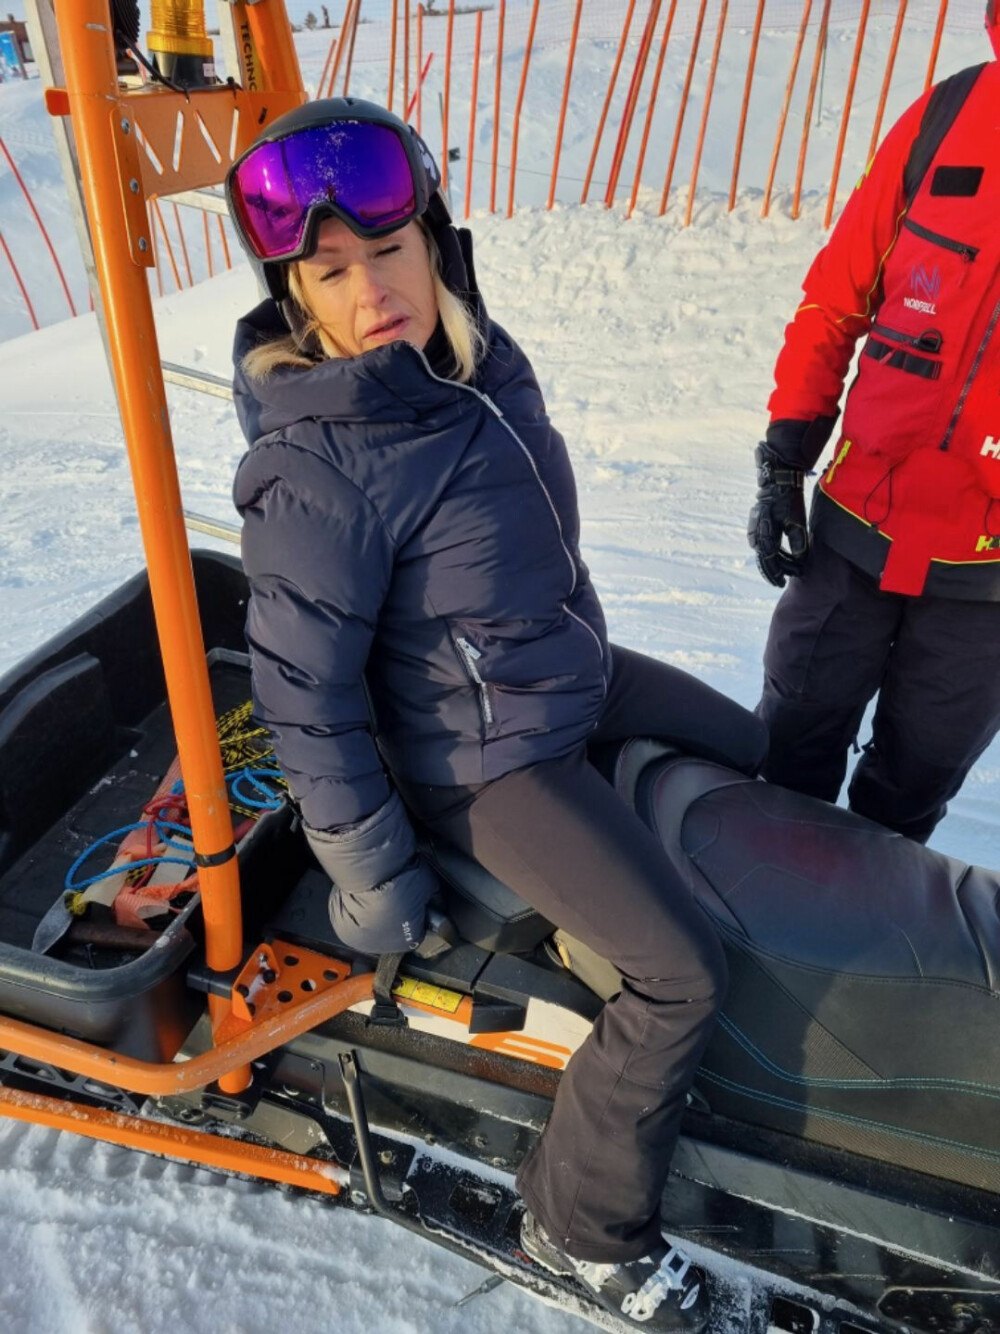 <b>STYGT SKA­DET:</b> Me­re­te ble hjul­pet opp på en snø­scoot­er et­ter det styg­ge fal­let i ski­bak­ken på No­re­fjell. – Det gikk tre da­ger før jeg fikk kom­me inn på sy­ke­hus, sier hun.